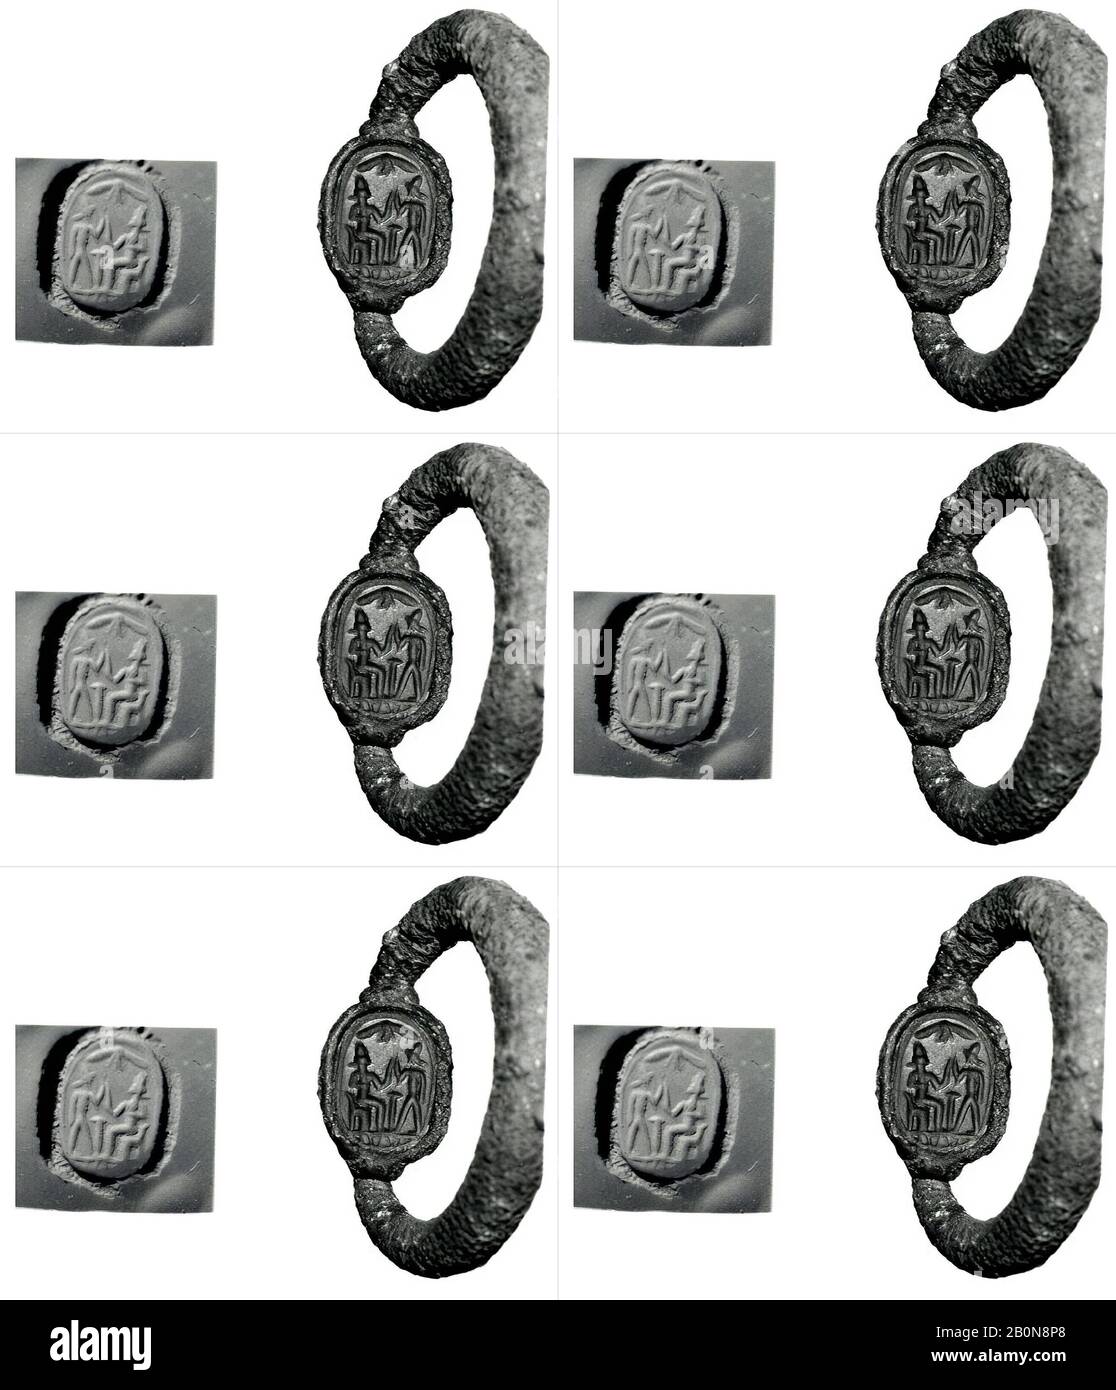 Silberner Schwenkring mit Skarabäus, zypriotisch, Archaisch, Datum 7.-Anfang 5. Jahrhundert v. Chr., zypriotisch, Silber, sard, Andere: 1/2 x 5/16 x 1/8 Zoll. (1,3 x 0,8 x 0,4 cm), Durchm. (Ringdurchmesser): 1 3/8 Zoll (3,4 cm Stockfoto